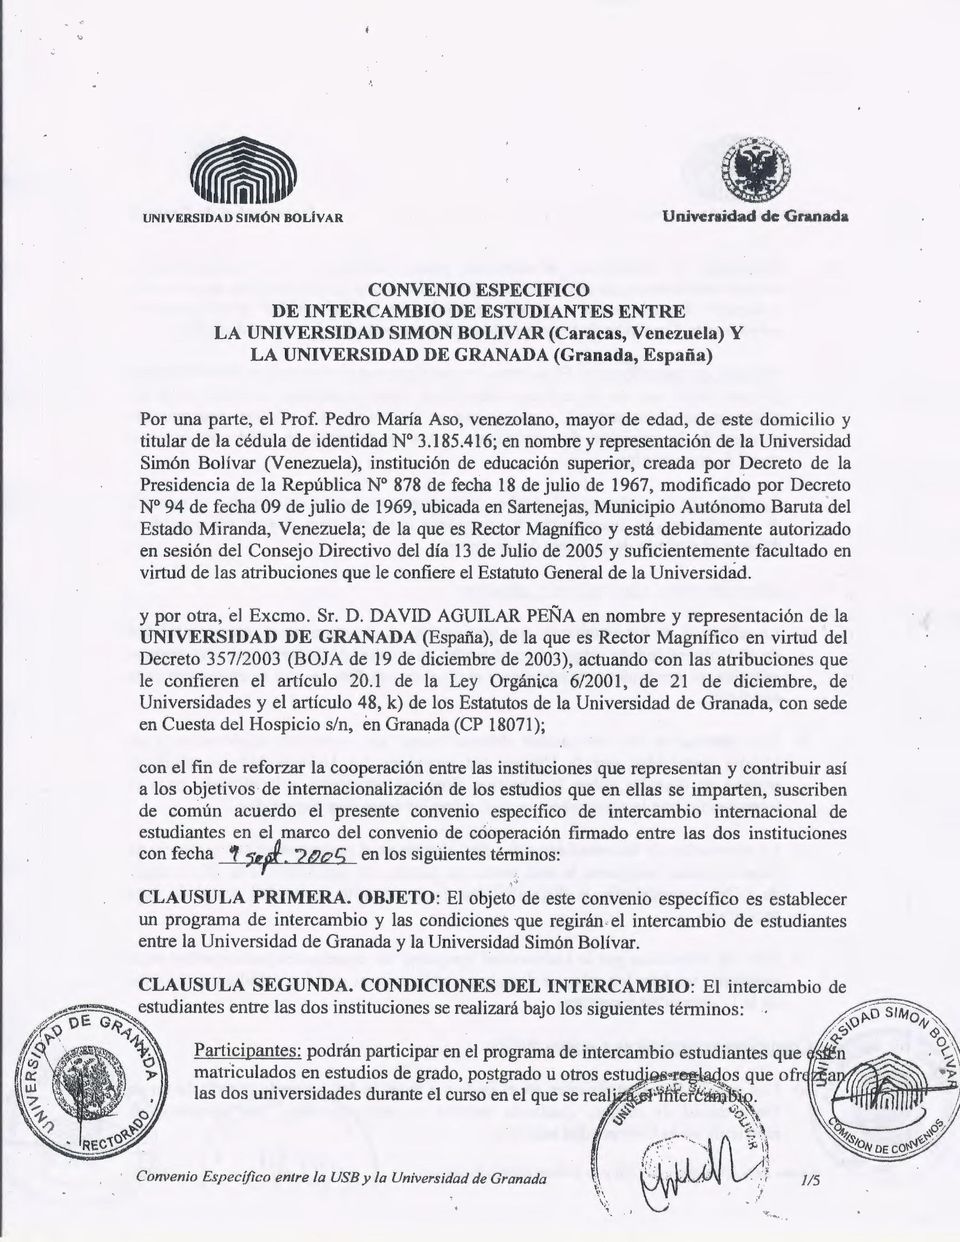 416; en nombre y representación de la Universidad Simón Bolívar (Venezuela), institución de educación superior, creada por Decreto de la Presidencia de la República Nº 878 de fecha 18 de julio de